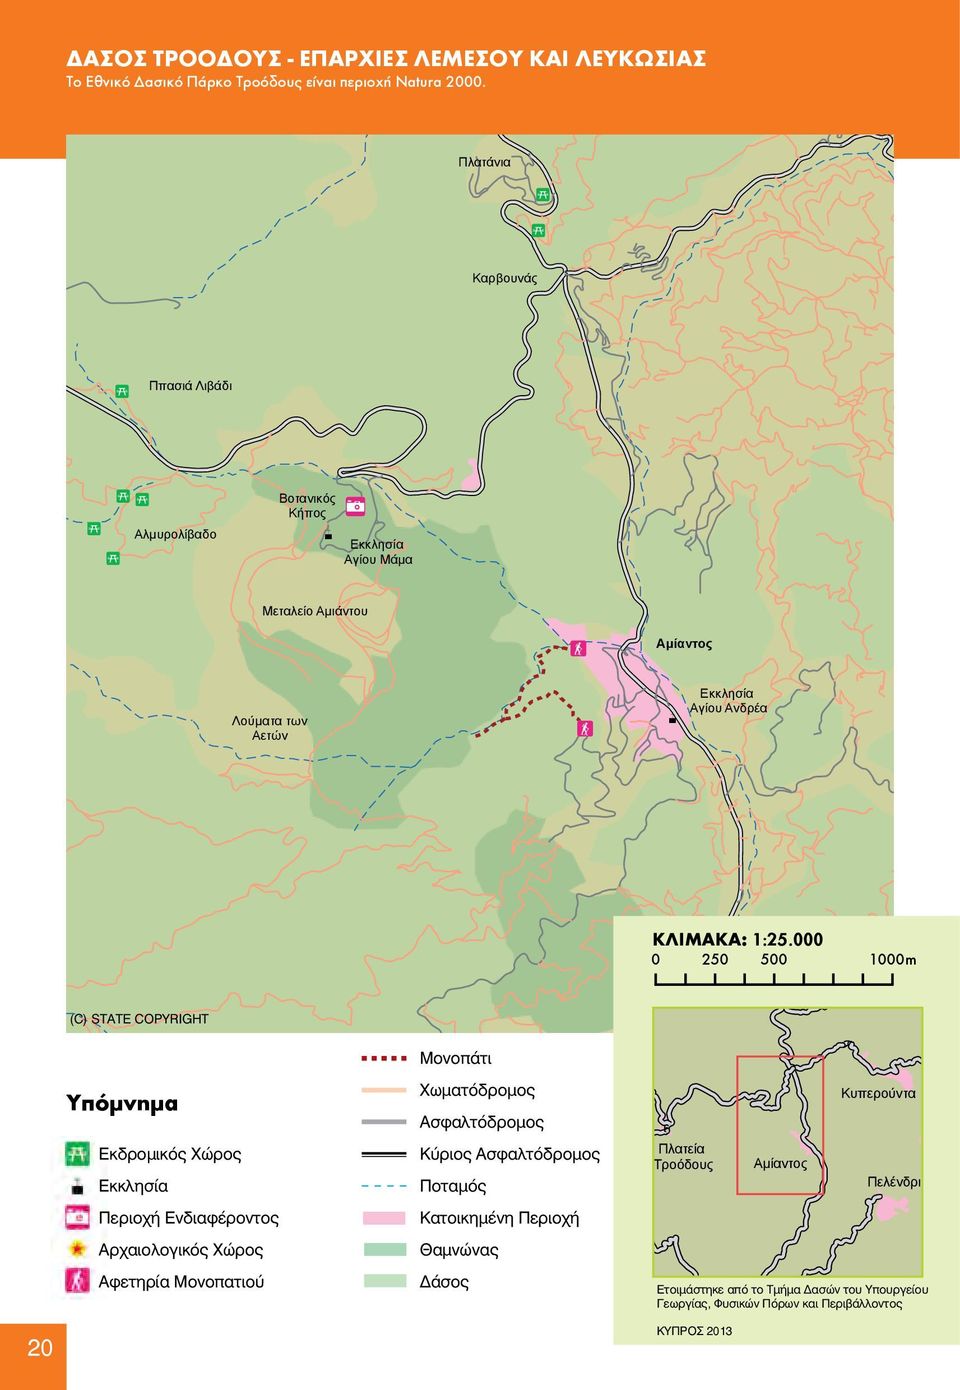 Ενδιαφέροντος Αρχαιολογικός Χώρος Αφετηρία Μονοπατιού Μονοπάτι Χωματόδρομος Ασφαλτόδρομος Κύριος Ασφαλτόδρομος Αγίου Ανδρέα Ποταμός Κατοικημένη Περιοχή Θαμνώνας Δάσος Αγίου Ανδρέα ΚΛΙΜΑΚΑ:1:25.